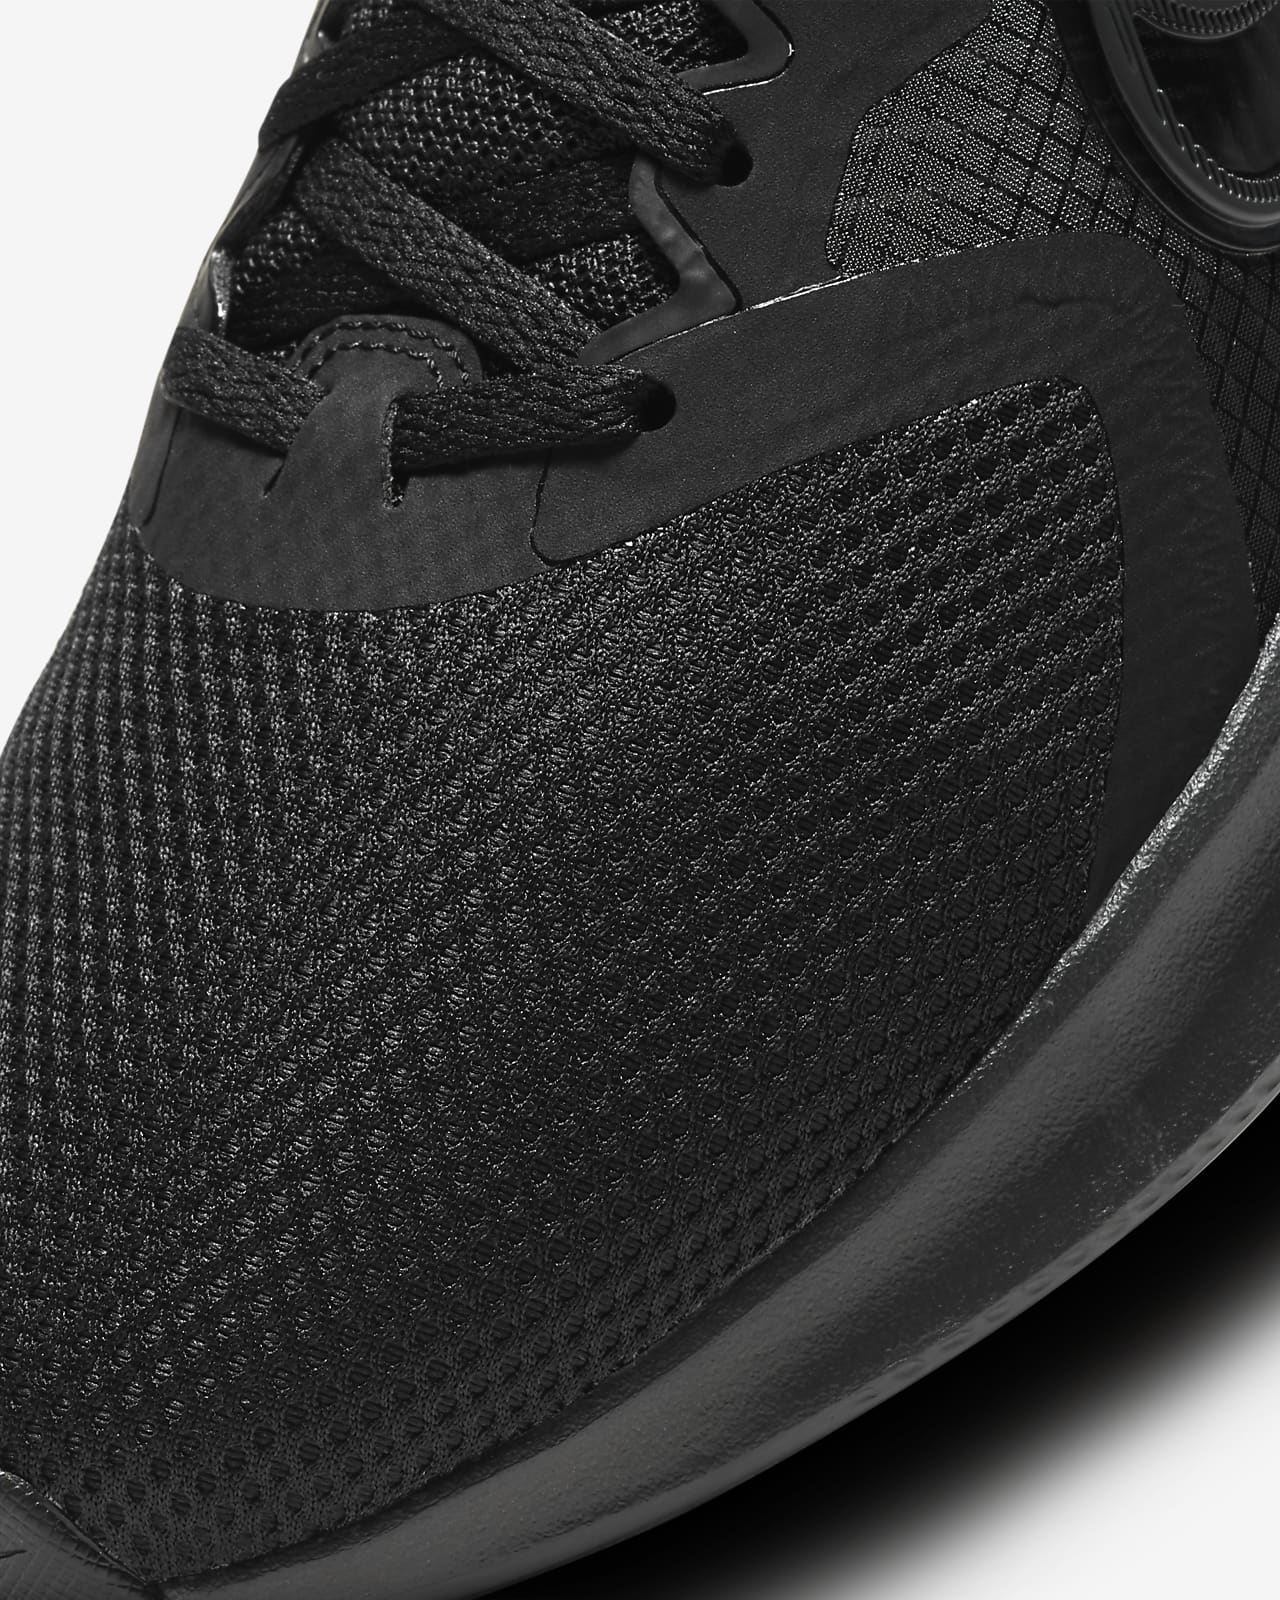 Nike Downshifter Men's Running Shoes.